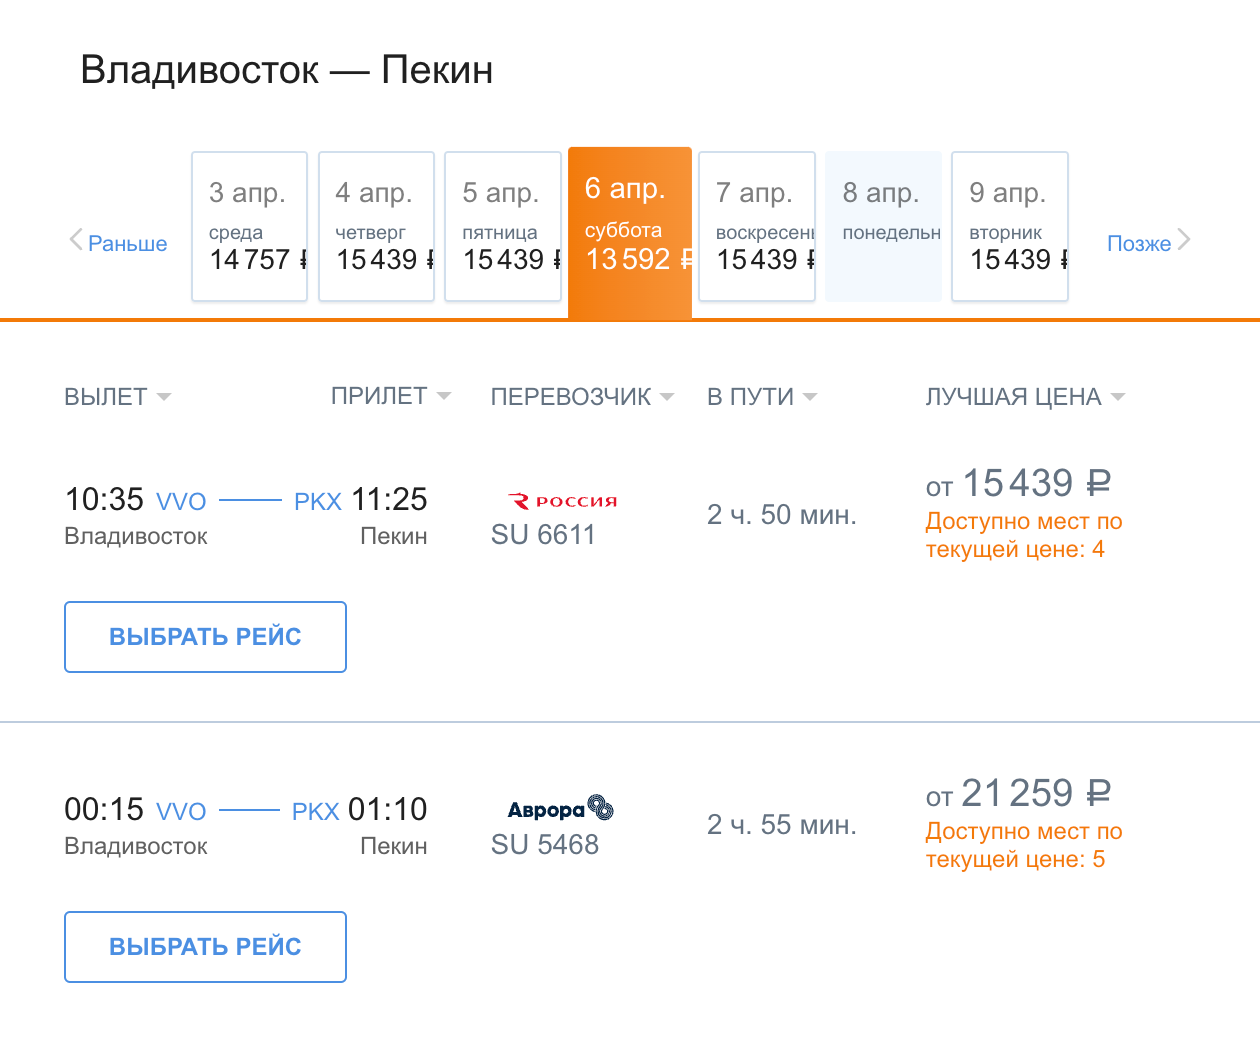 Прямые рейсы других авиакомпаний из Владивостока в Пекин 6 апреля. Источник: aeroflot.ru